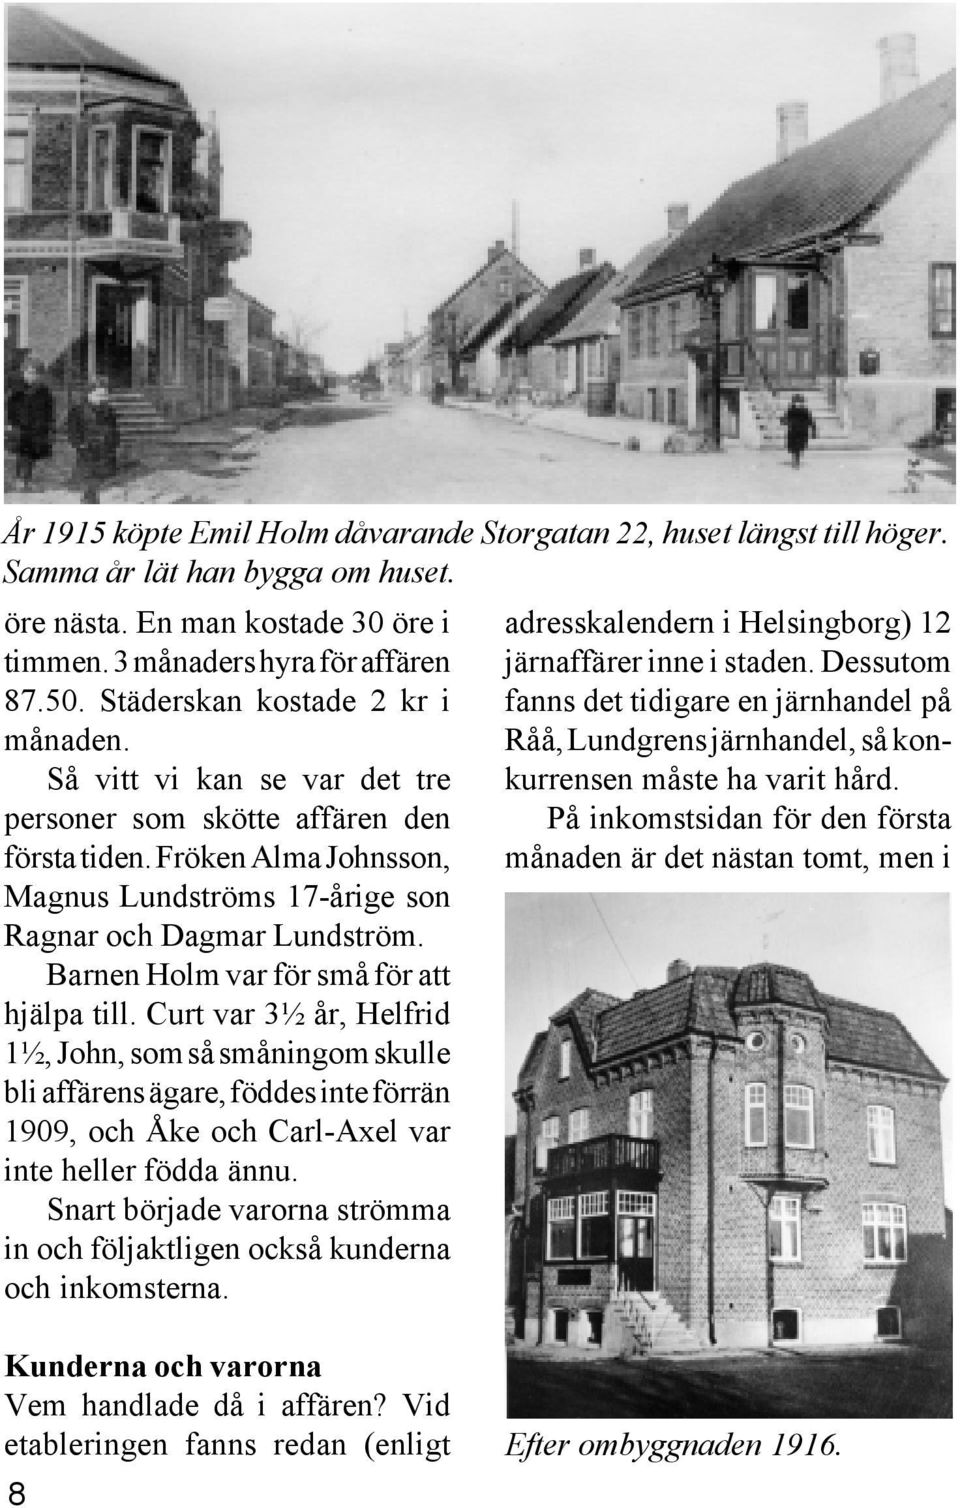 Barnen Holm var för små för att hjälpa till. Curt var 3½ år, Helfrid 1½, John, som så småningom skulle bli affärens ägare, föddes inte förrän 1909, och Åke och Carl-Axel var inte heller födda ännu.